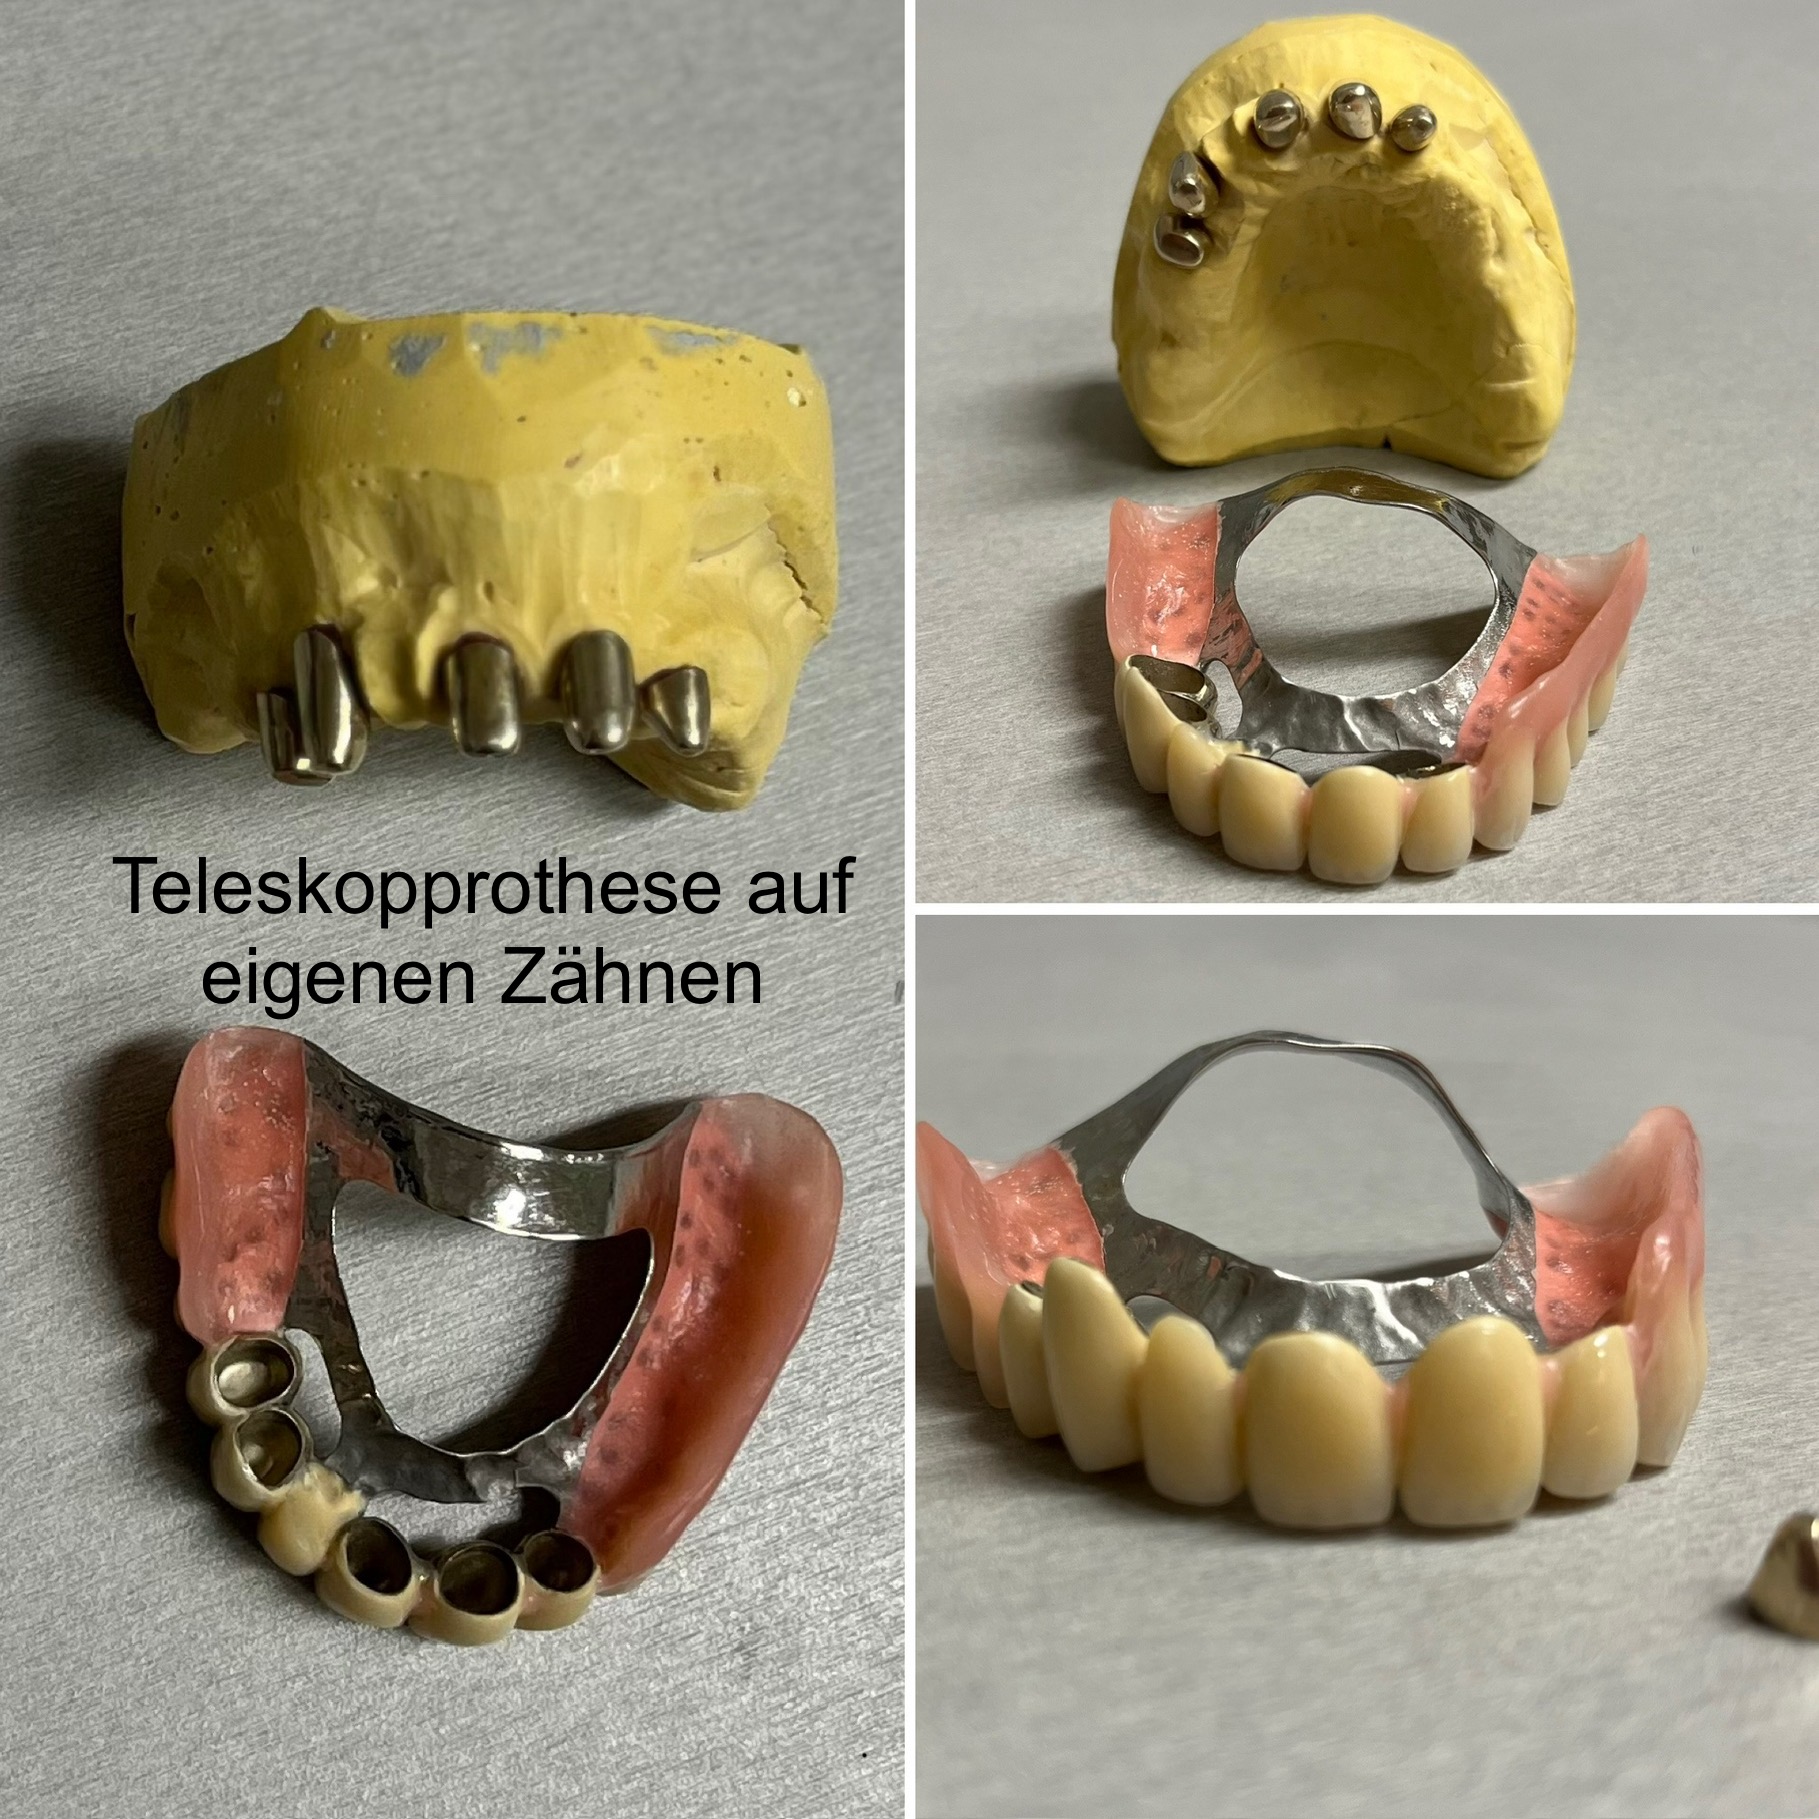 Teleskopprothese auf eigenen Zähnen